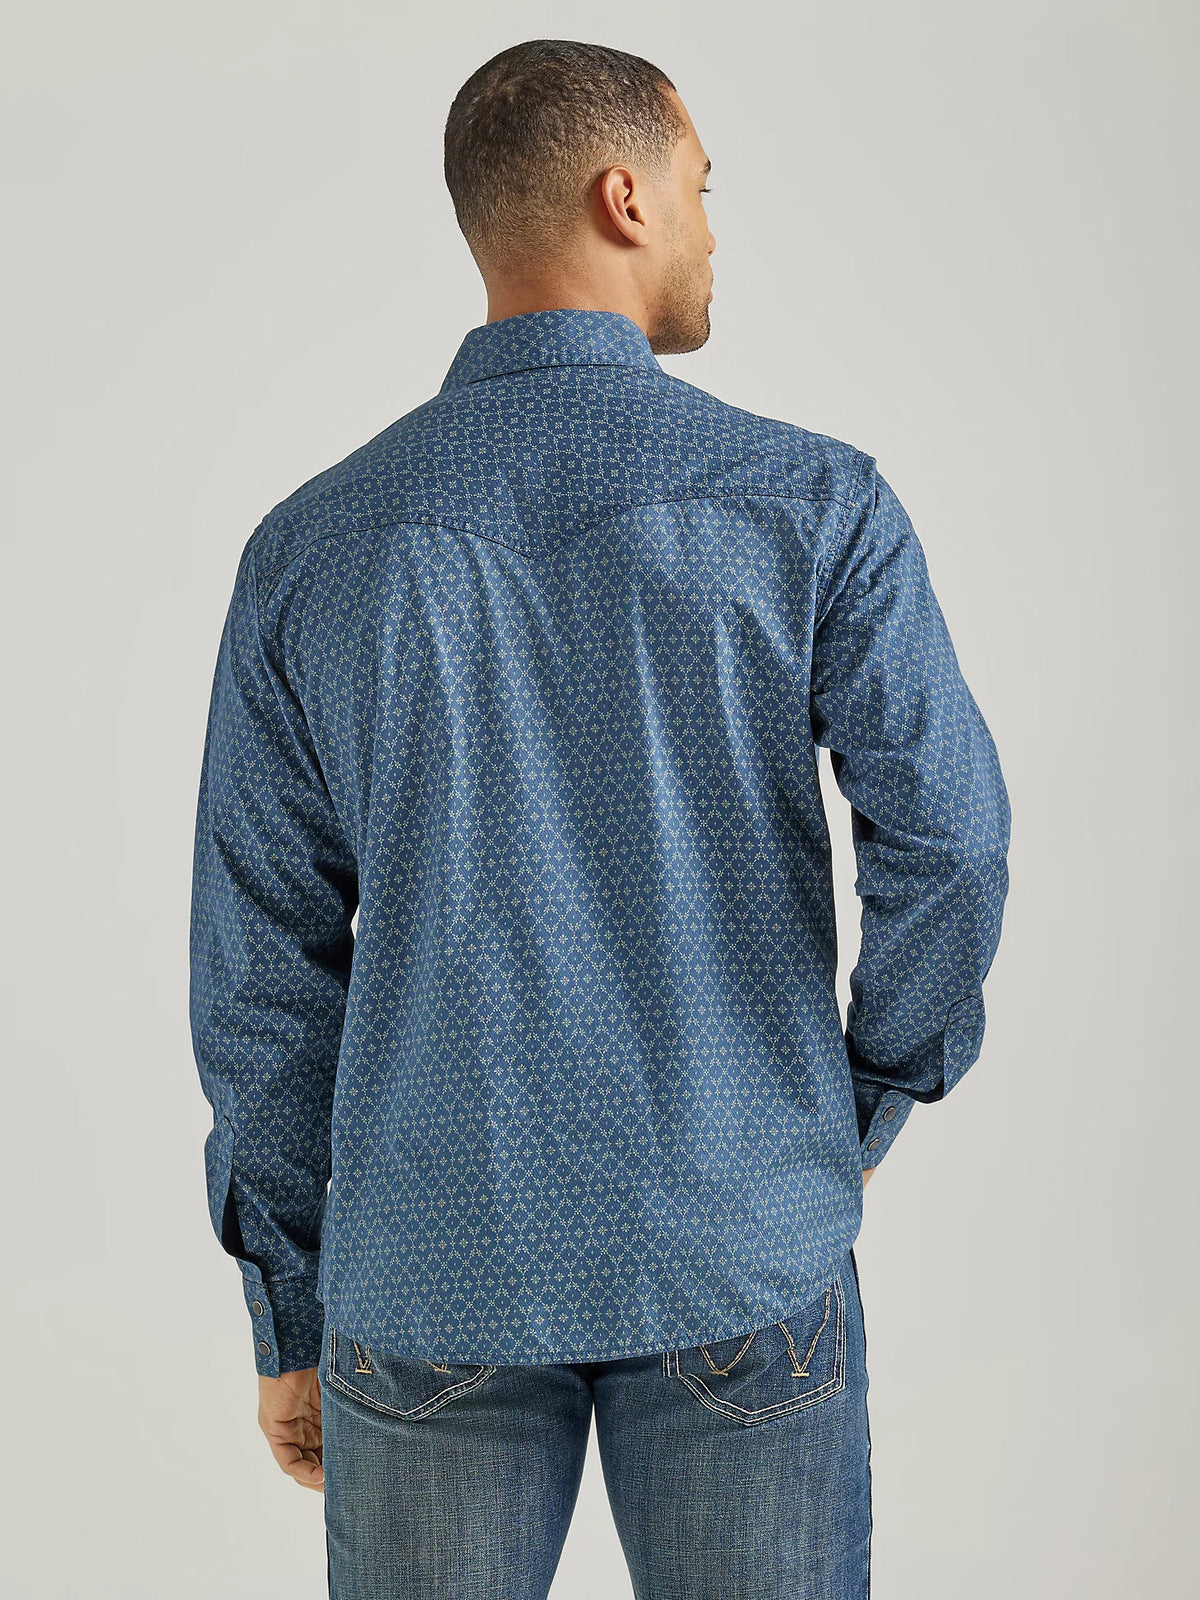 Men's Wrangler Retro Premium Western Snap Shirt in Blue Flower Chain